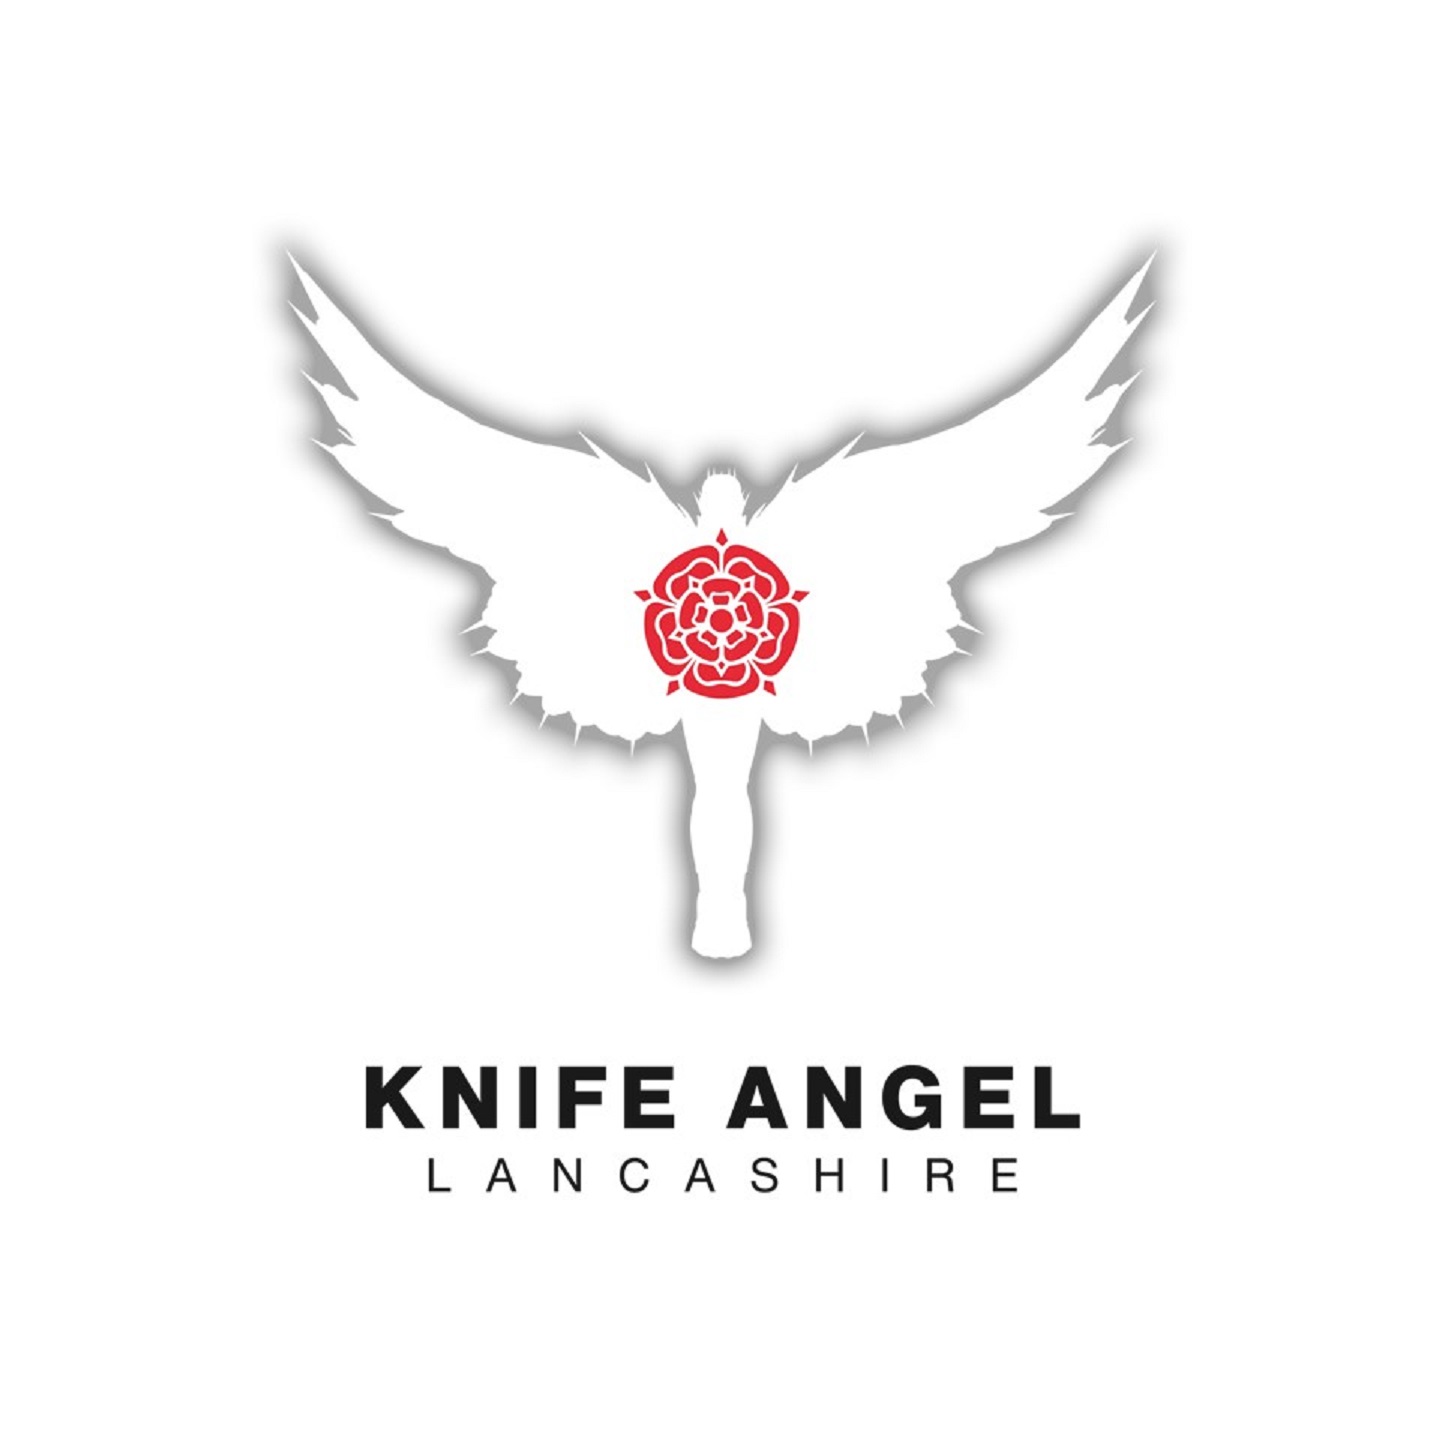 Knife Angel, Lancashire&#039;s logo